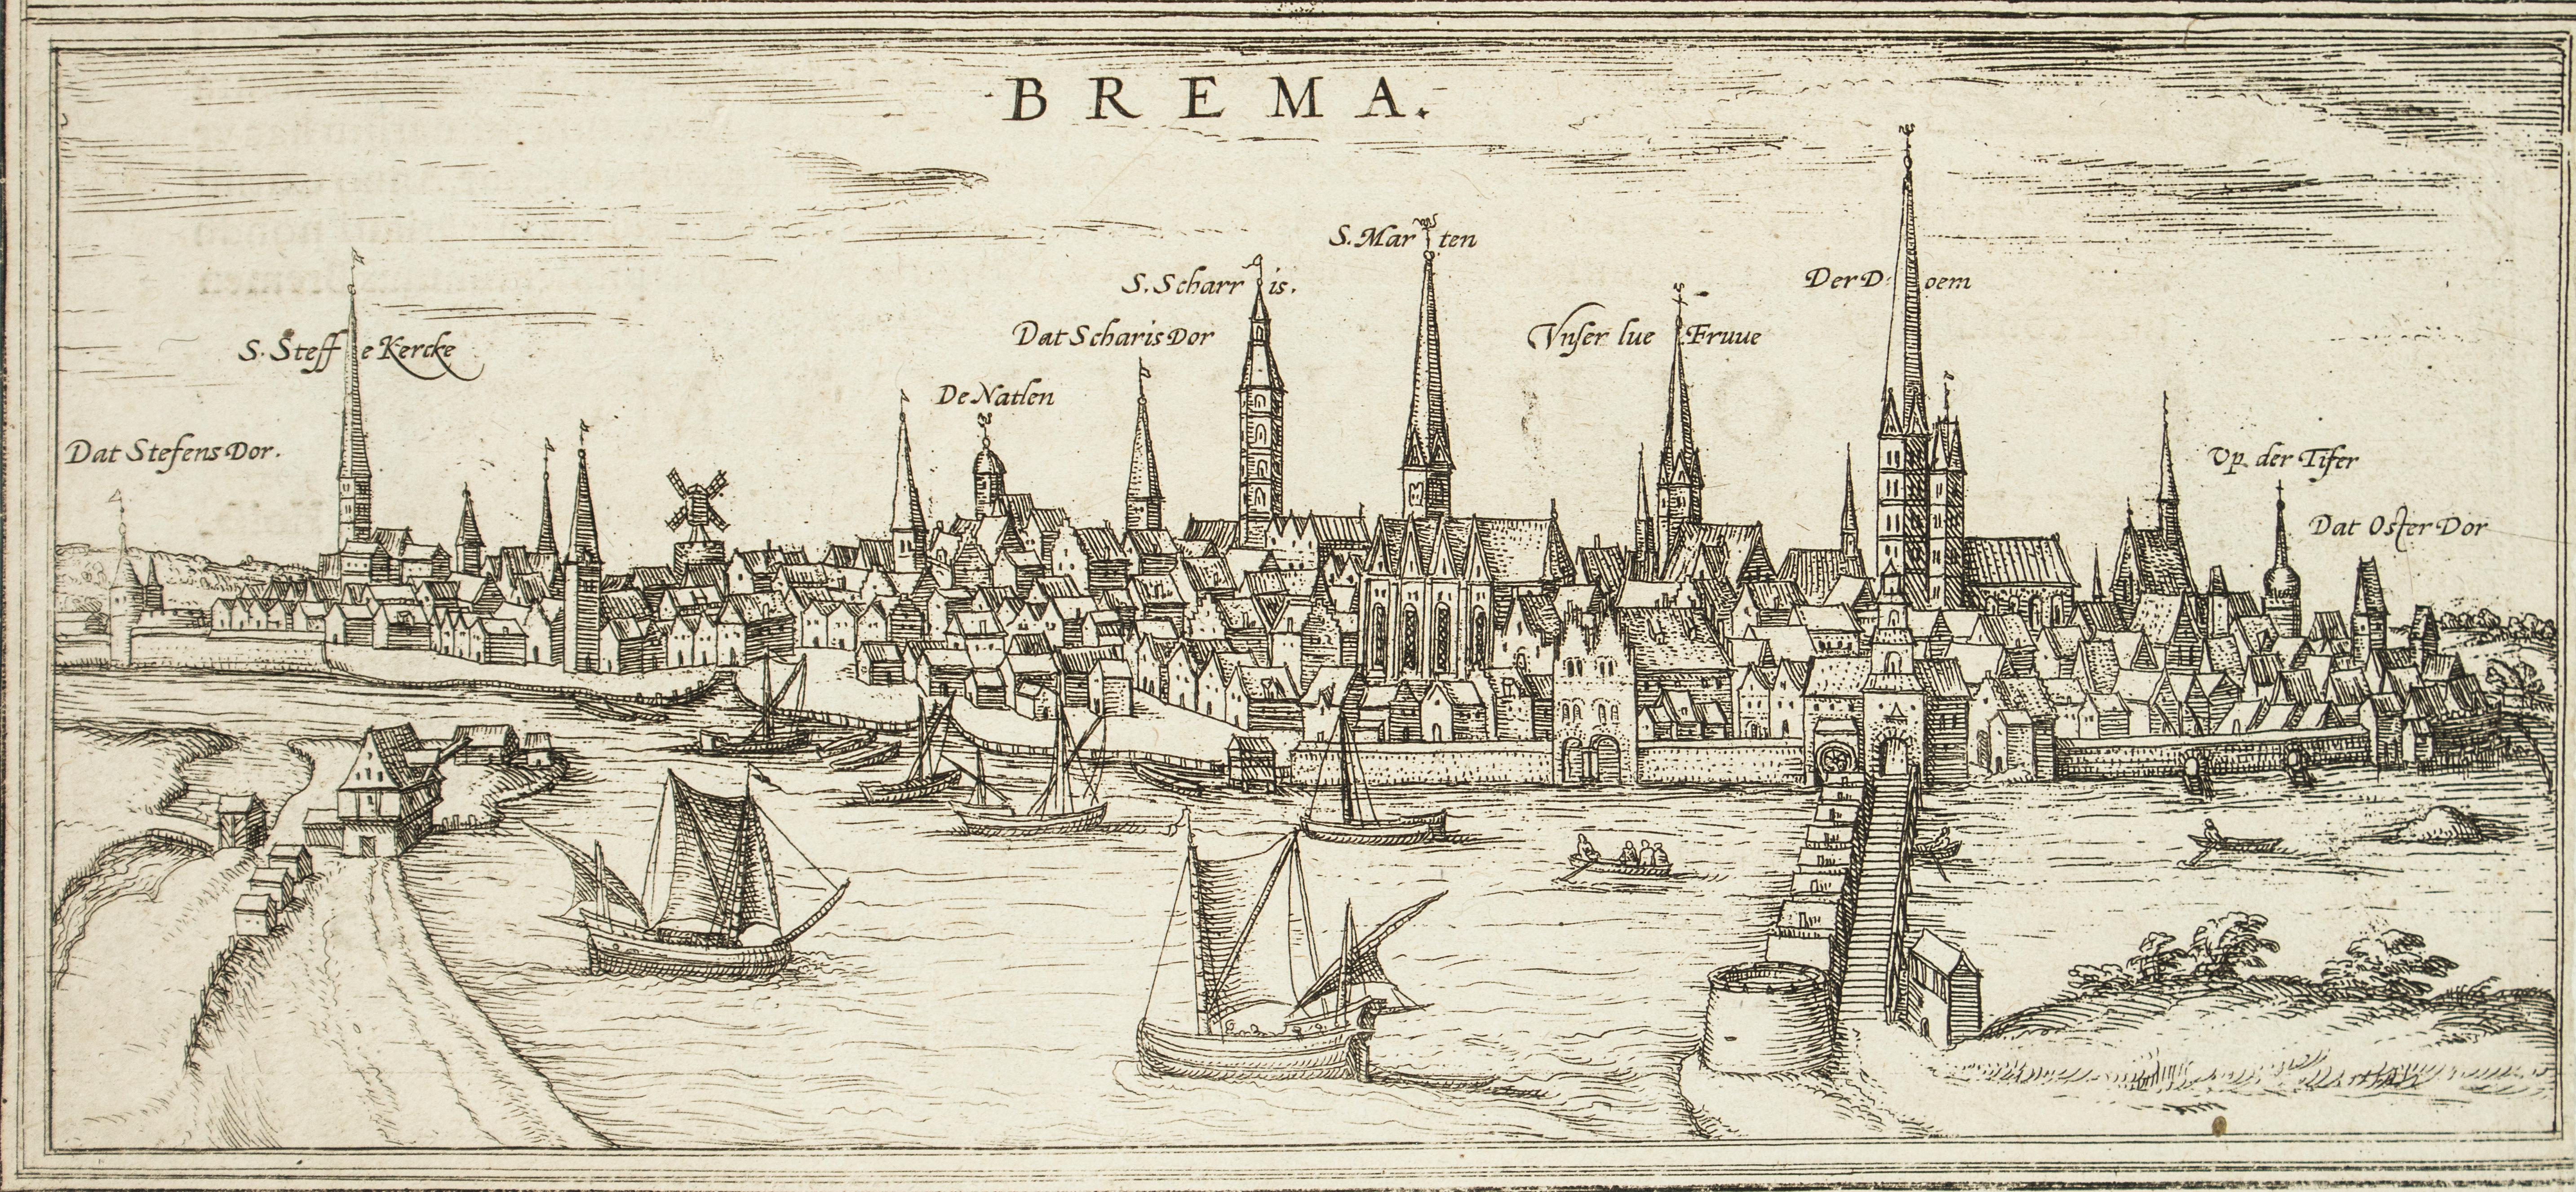 Bremen, Map from "Civitates Orbis Terrarum" - by F.Hogenberg - 1572-1617